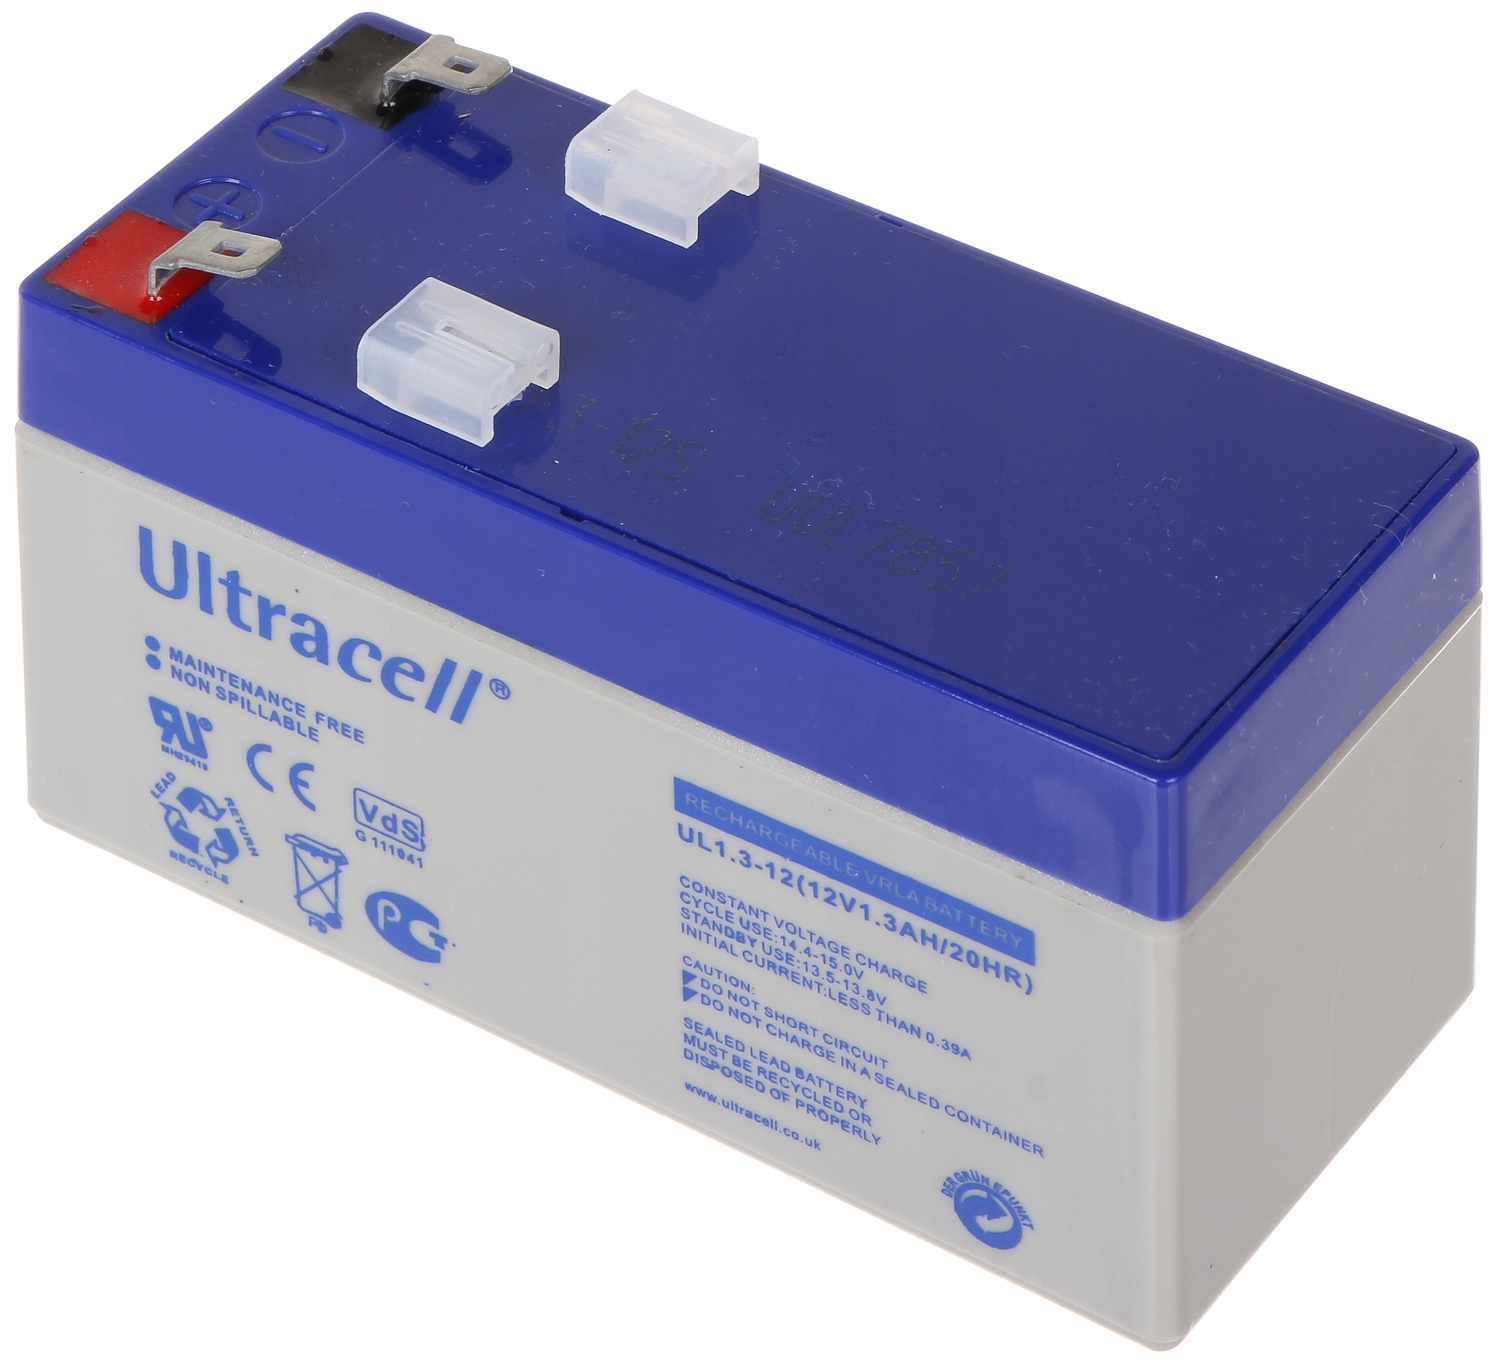 Аккумуляторная батарея "Ultracell", ul 7-12, 12v/7ah. Аккумулятор np3,5 /12. Аварийные аккумуляторы. Цена аккумулятора ul4-12.